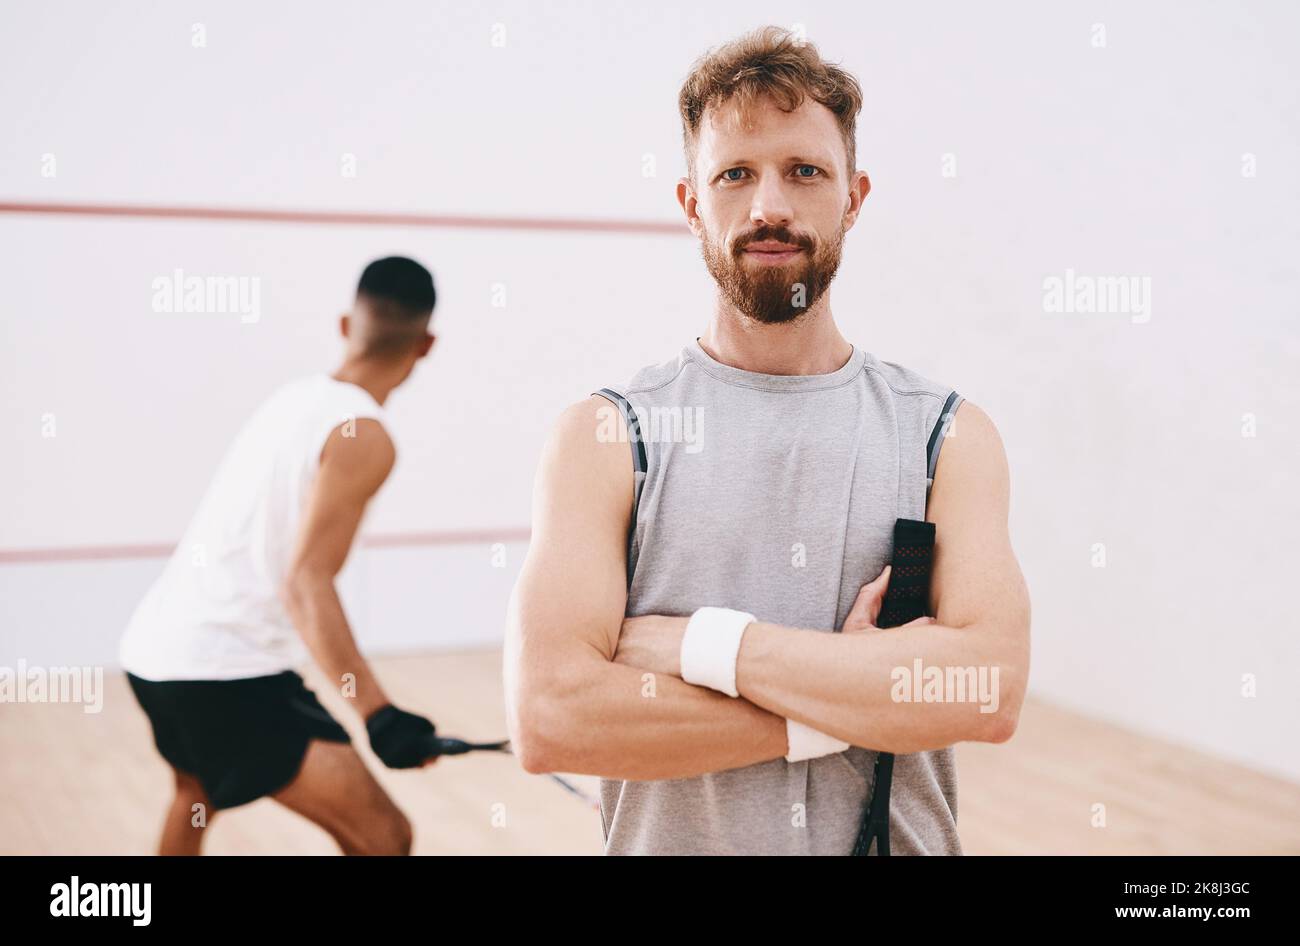 La determinazione vince ogni volta. Ritratto di un giovane che gioca una partita di squash con i suoi compagni di squadra sullo sfondo. Foto Stock